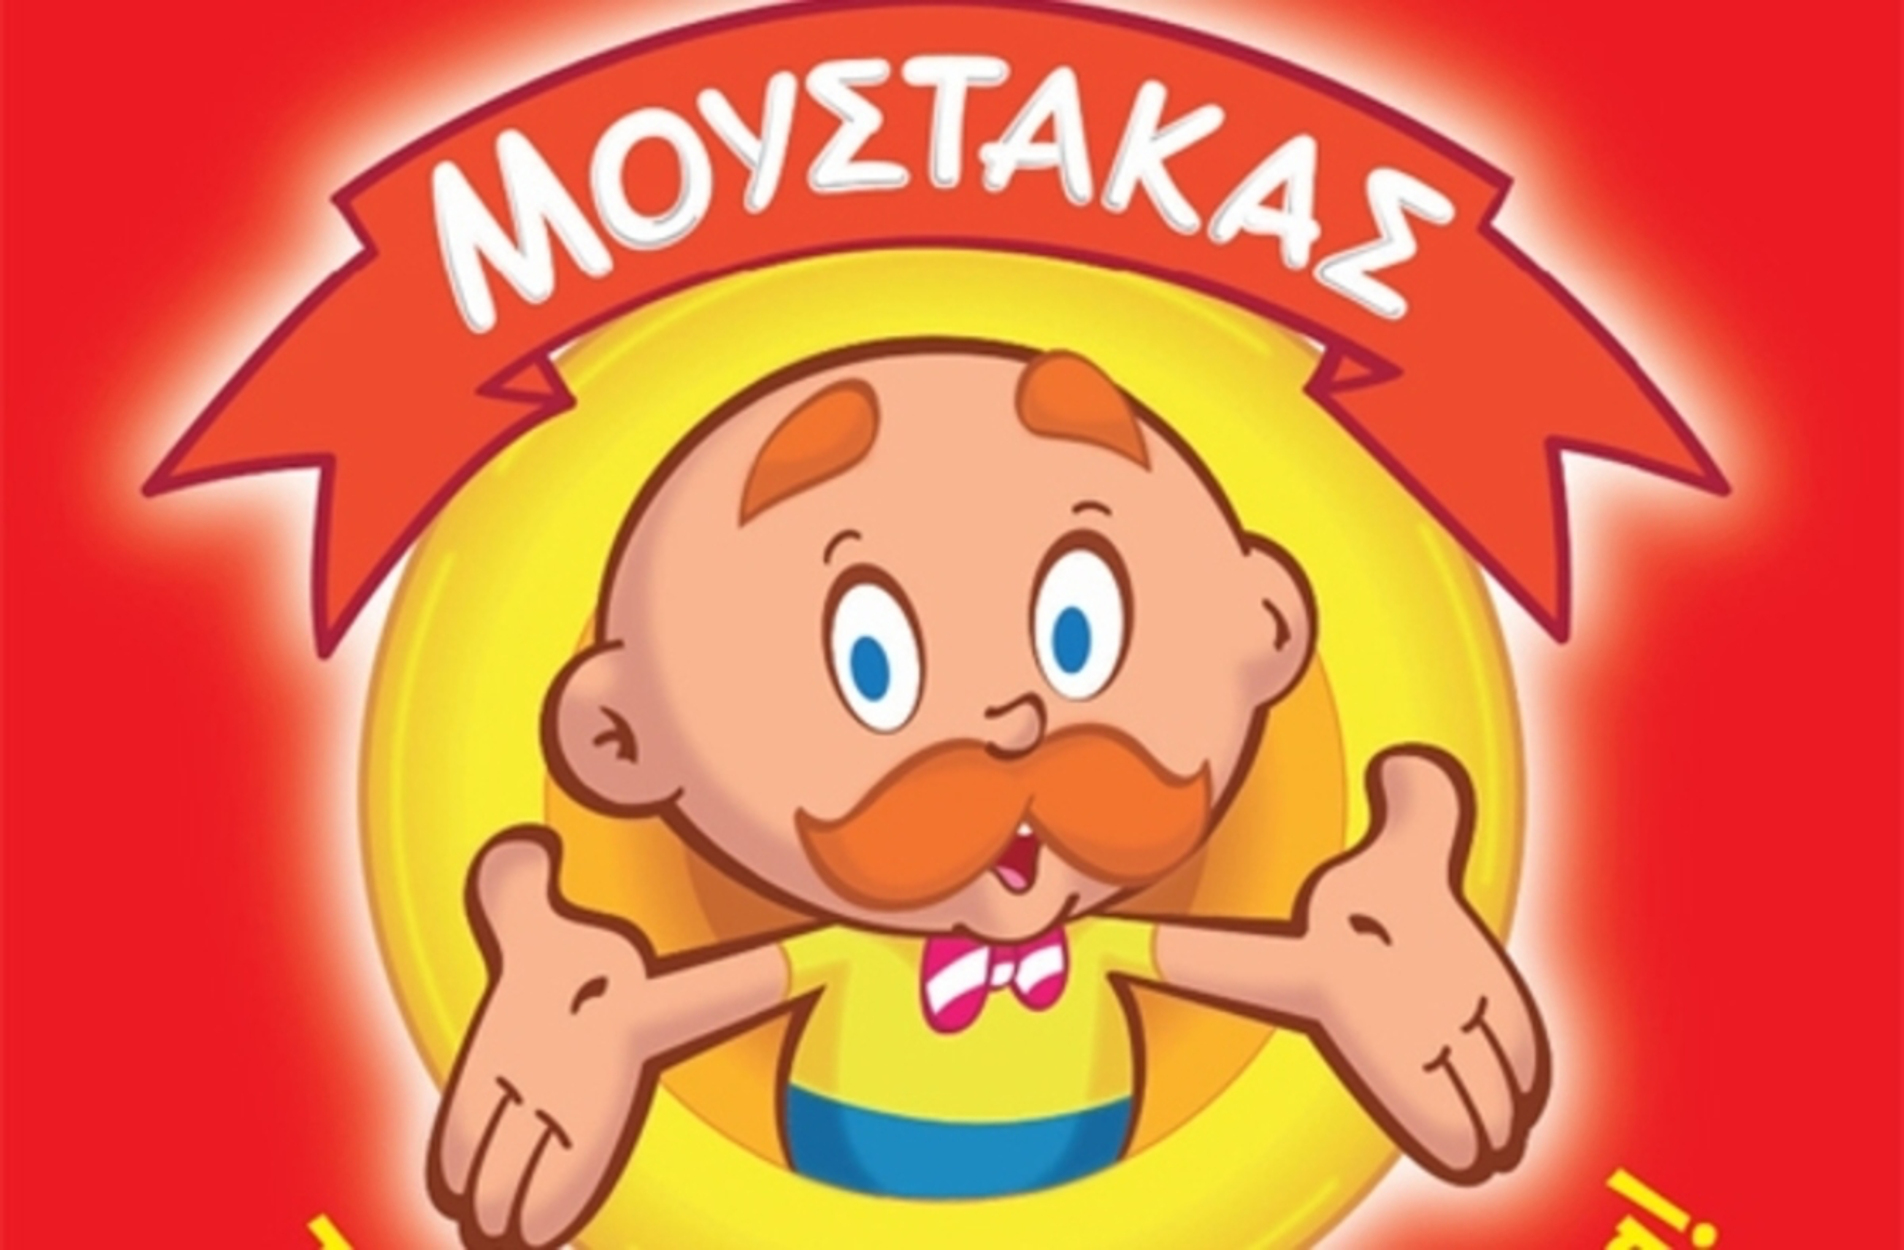 Γιώργος Μουστάκας: Πέθανε ο ιδρυτής της πασίγνωστης αλυσίδας παιχνιδιών!